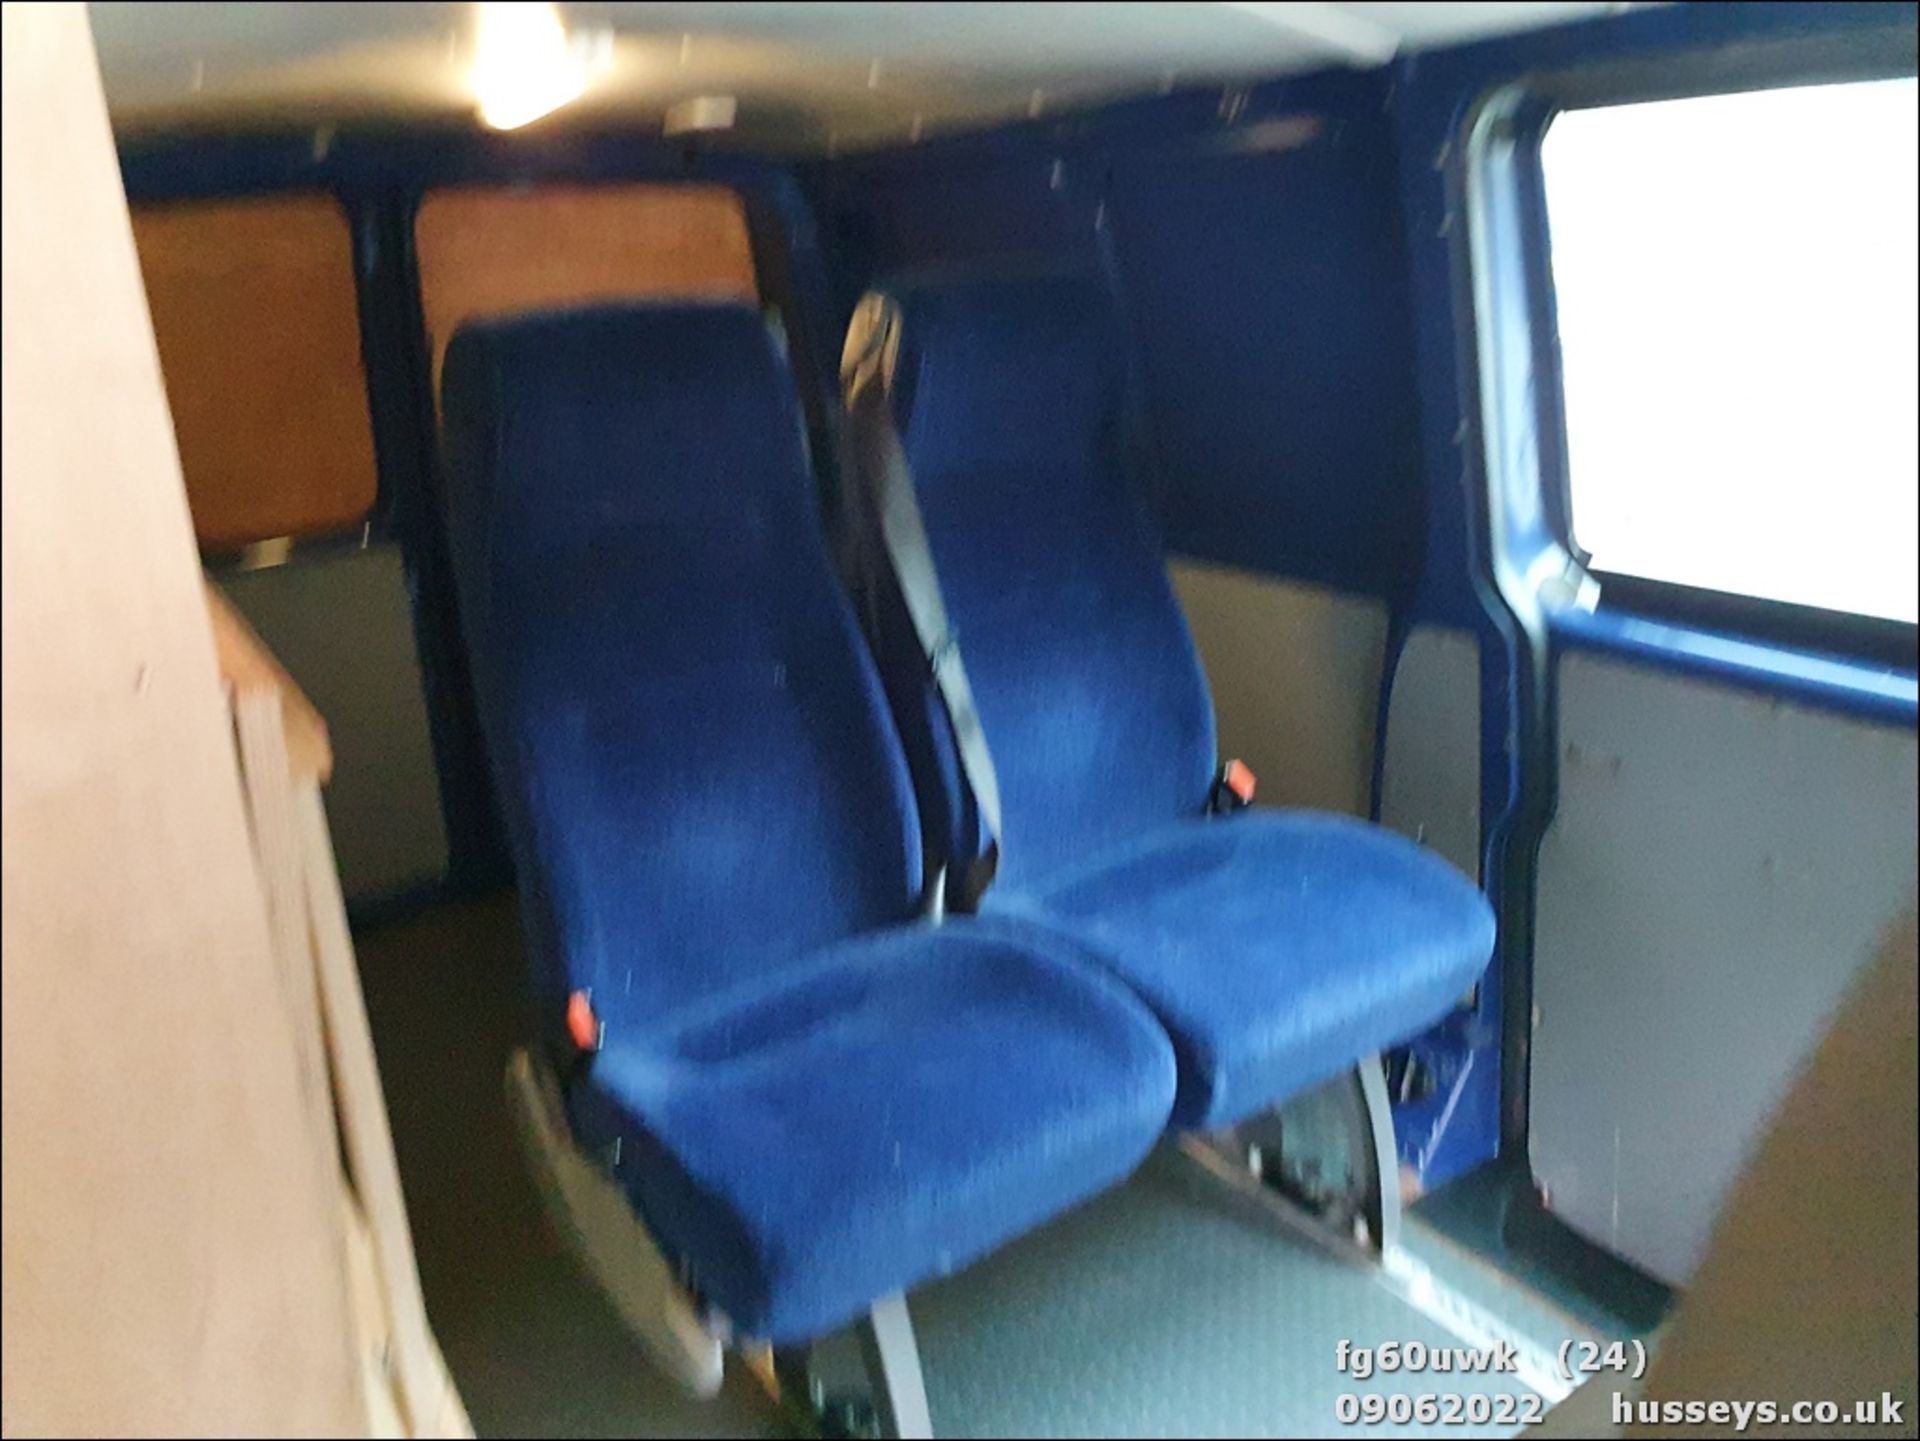 11/60 VOLKSWAGEN TRANSPORTER T32 102 TDI LWB - 1968cc 5dr Van (Blue) - Image 53 of 54